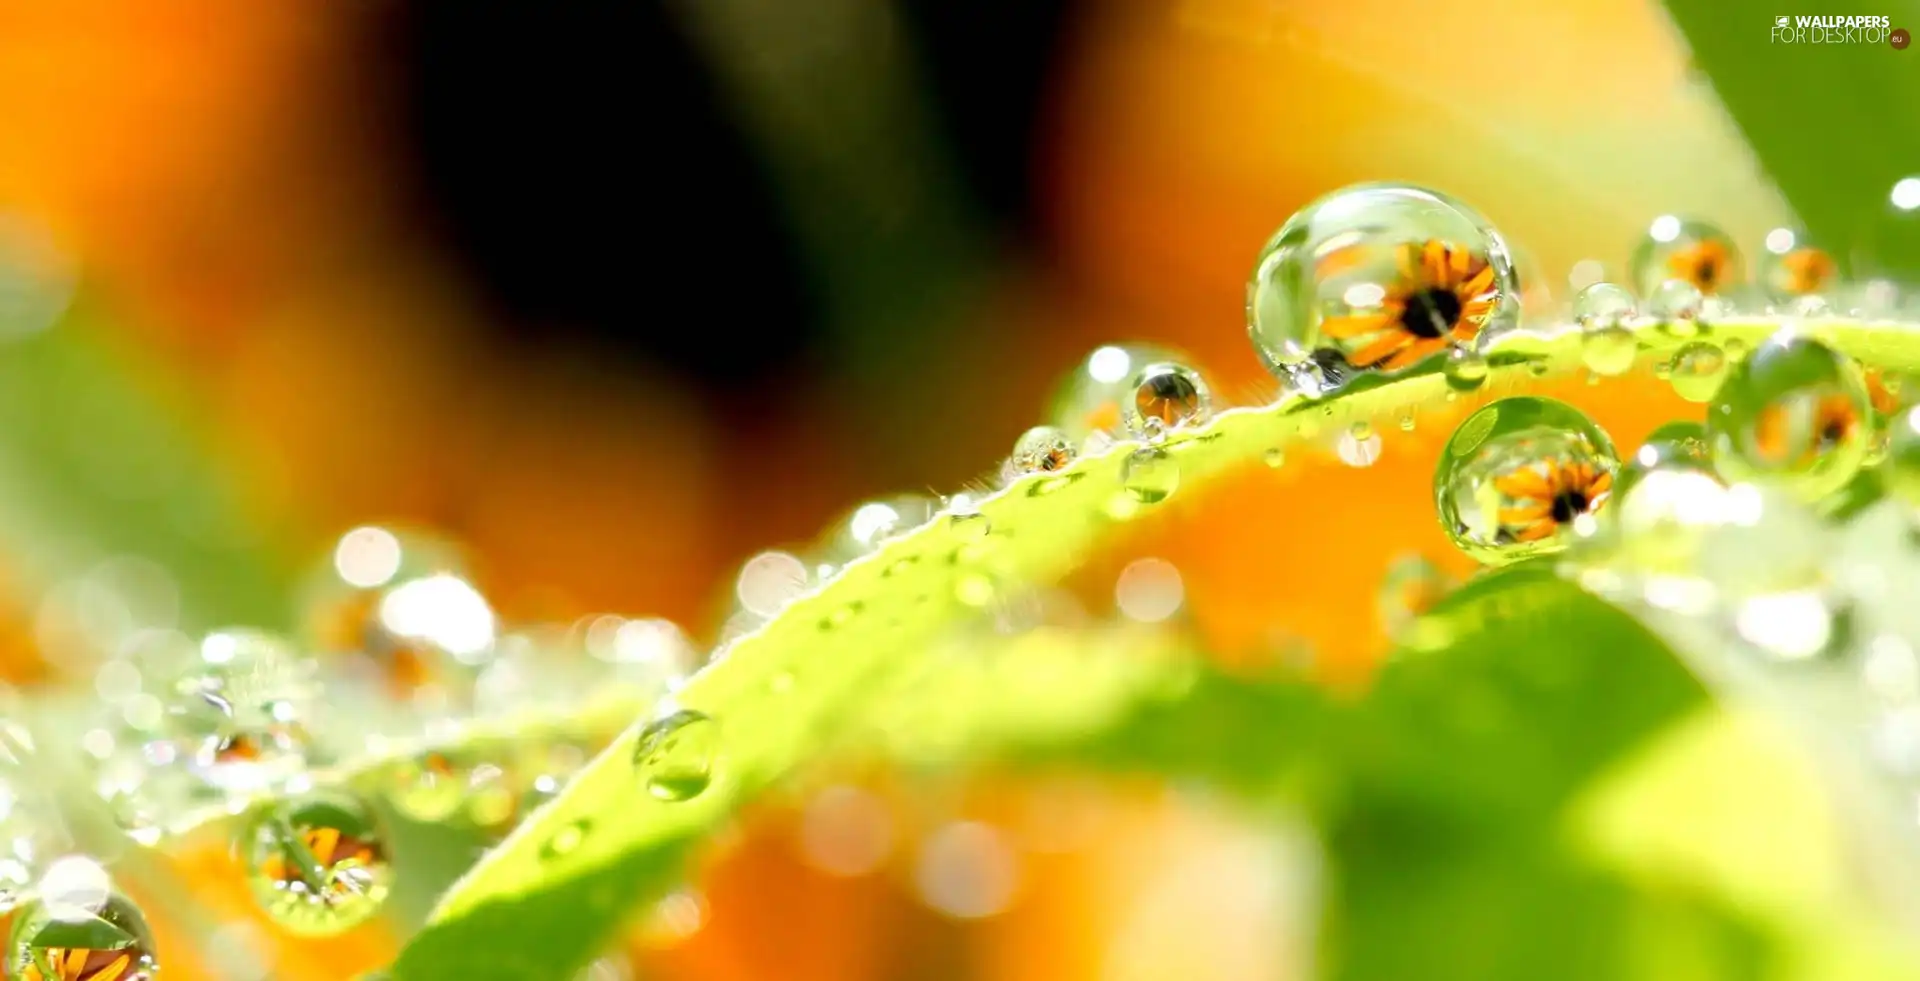 Leaf, droplets